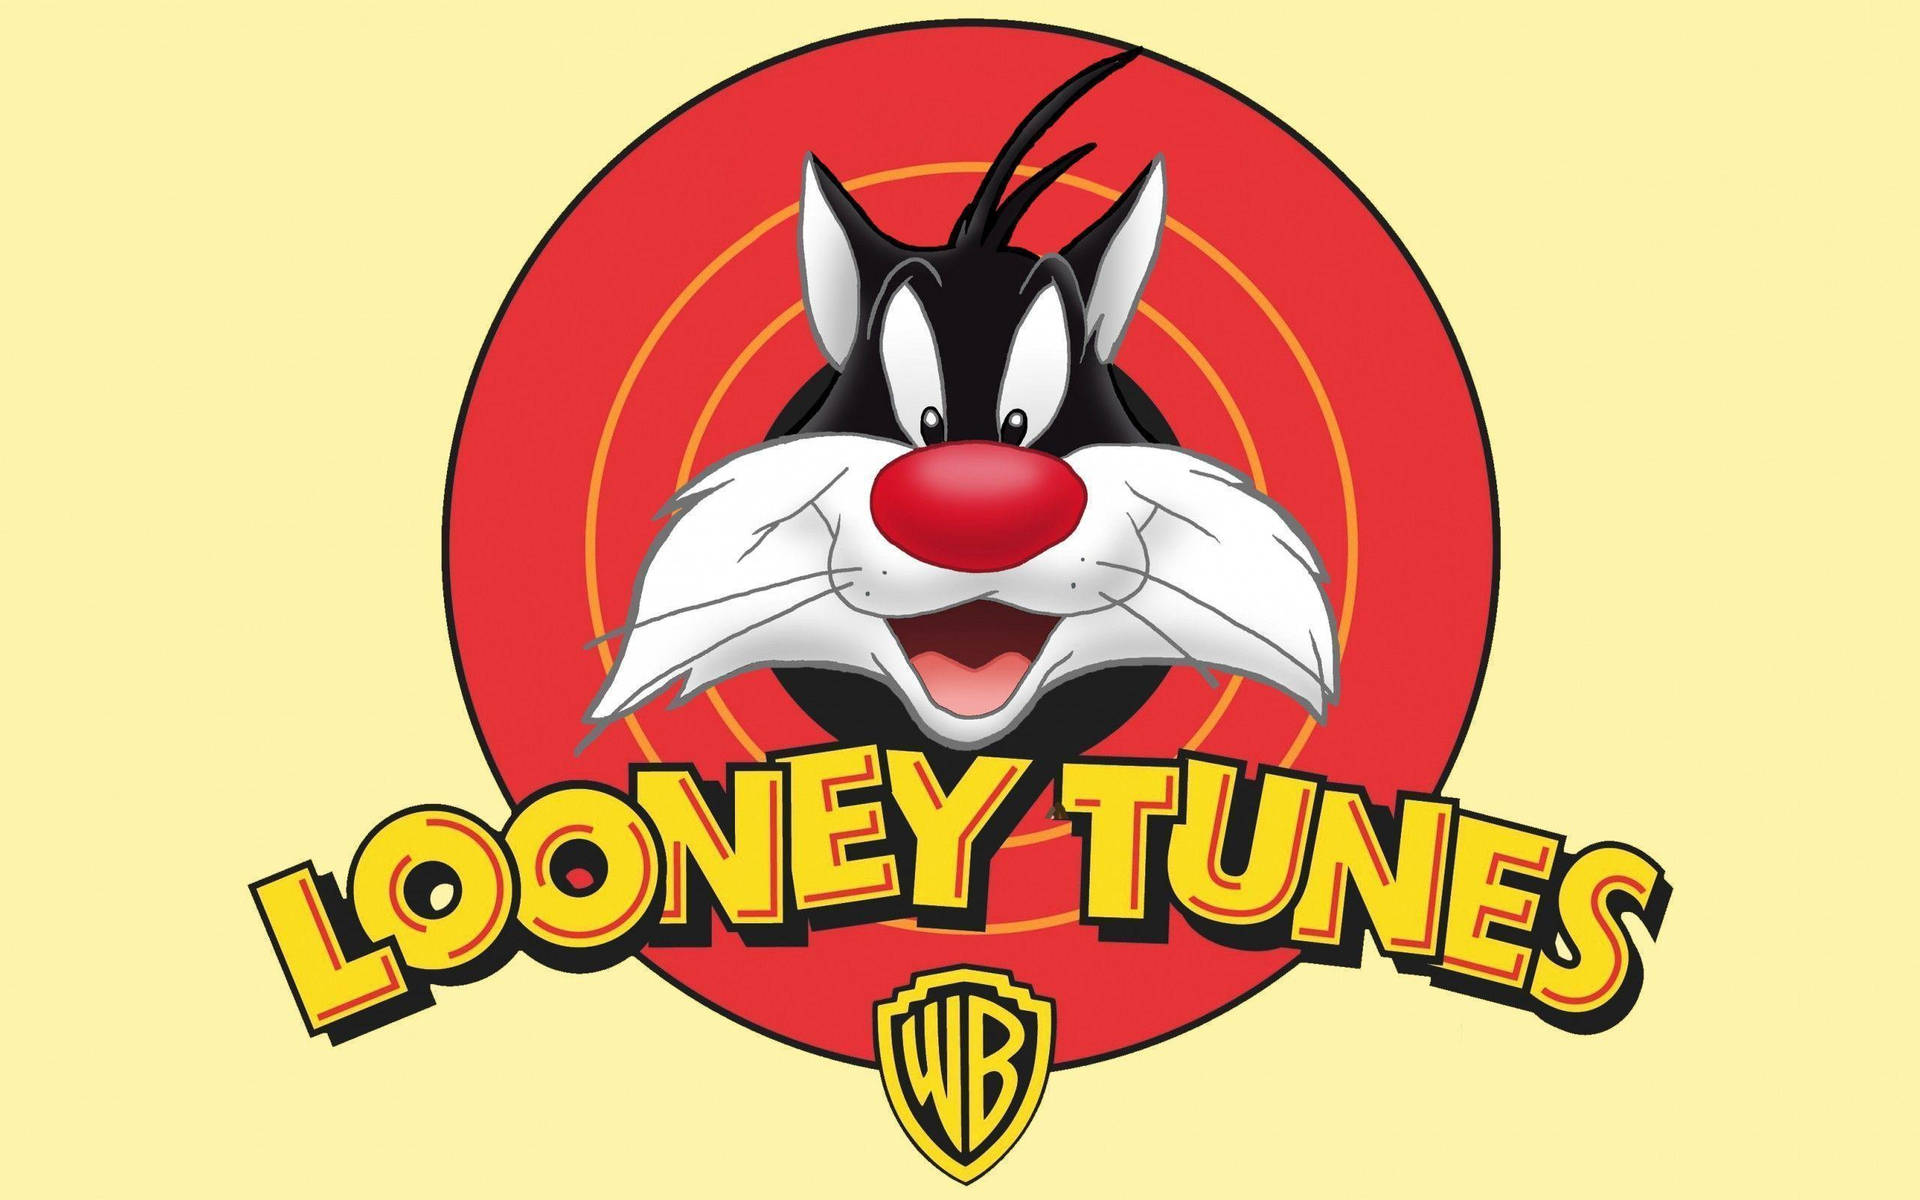 Sylvesterno Logotipo Do Looney Tunes. Papel de Parede